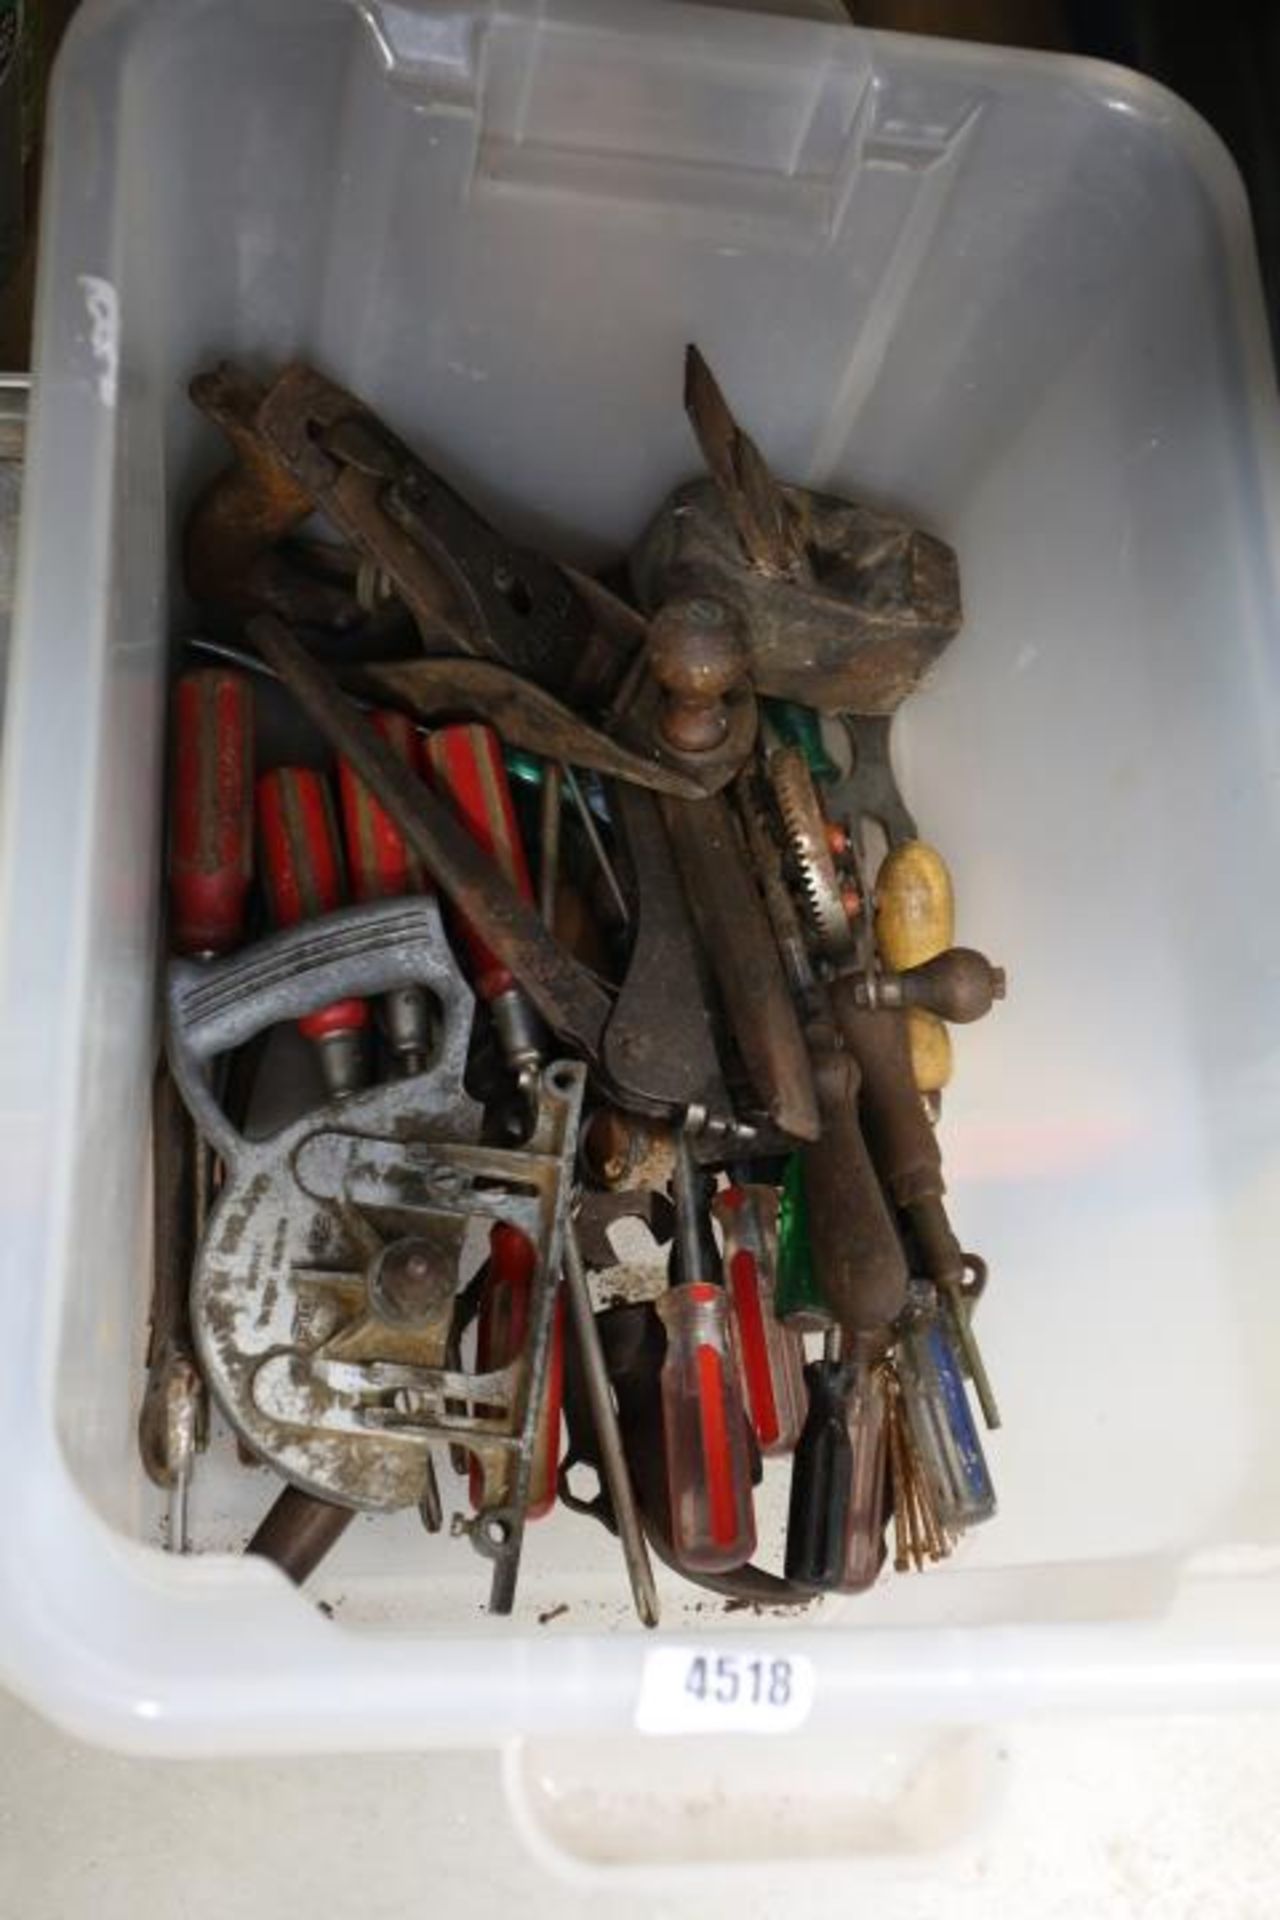 4554 Box of tools